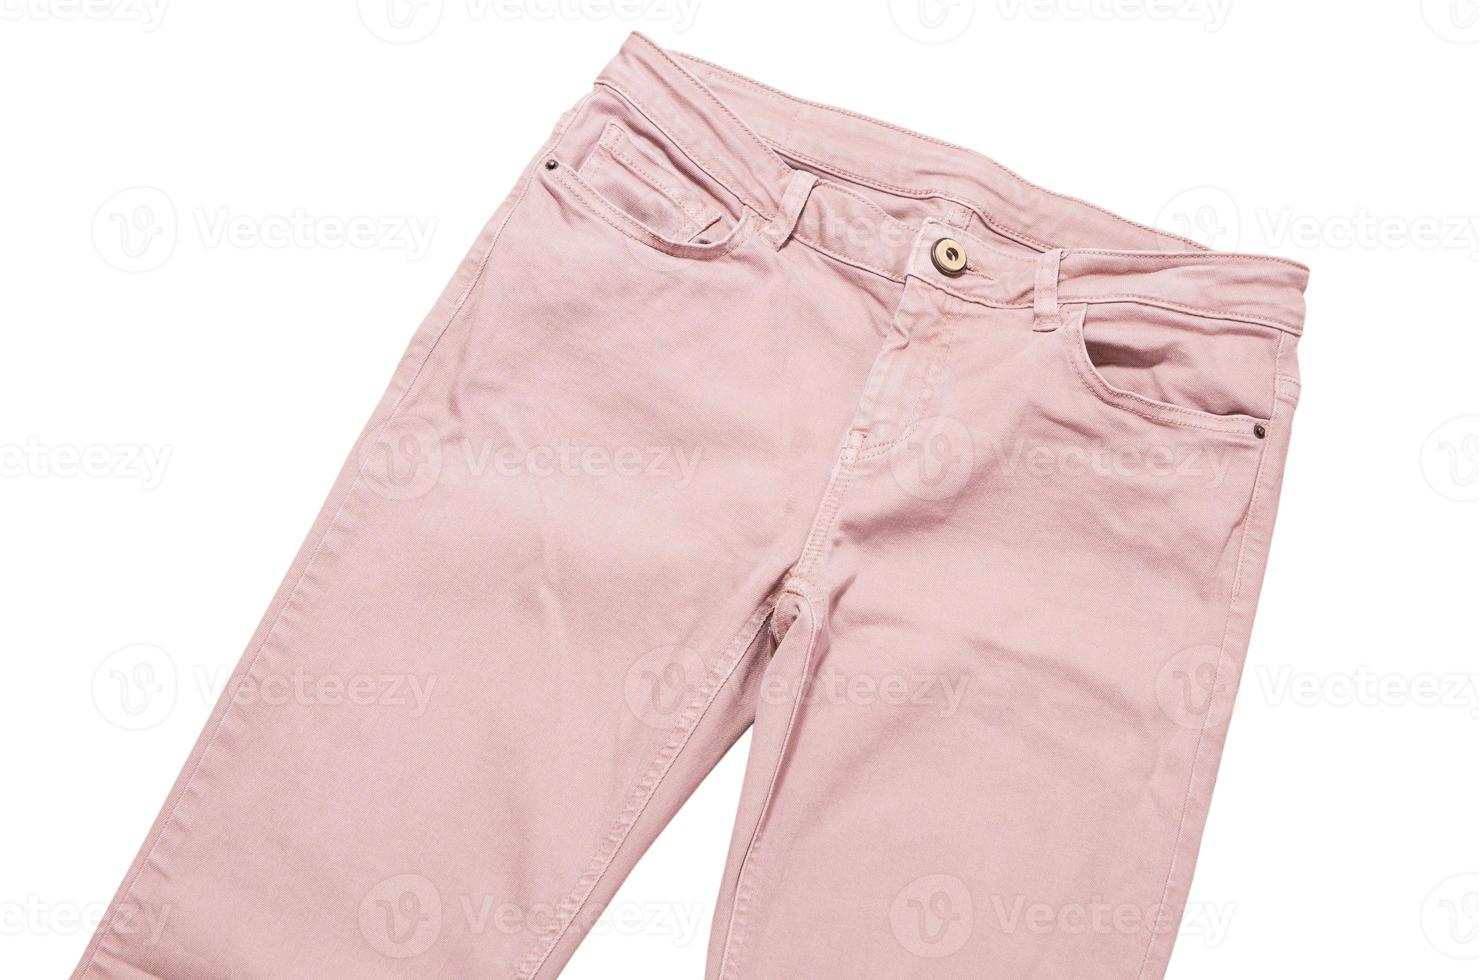 calças femininas, vista superior das calças jeans rosa claro isolada no fundo branco, calças justas dobradas foto